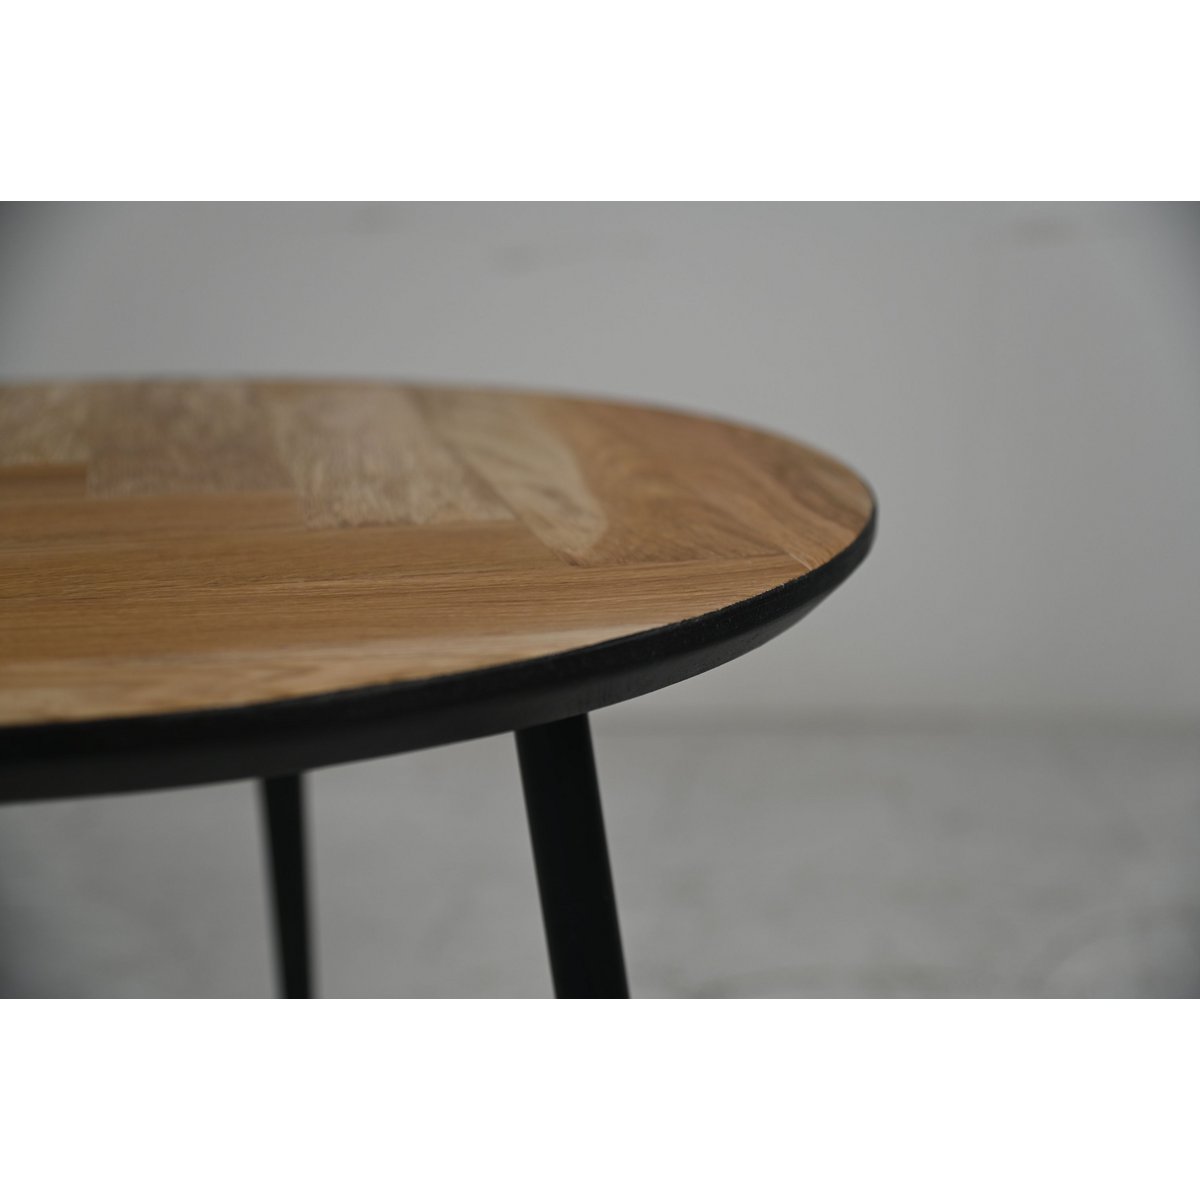 Ronde vimba salontafel van eikenhout met drie zwarte metalen poten en zwarte swiss edge randafwerking houtpatroon